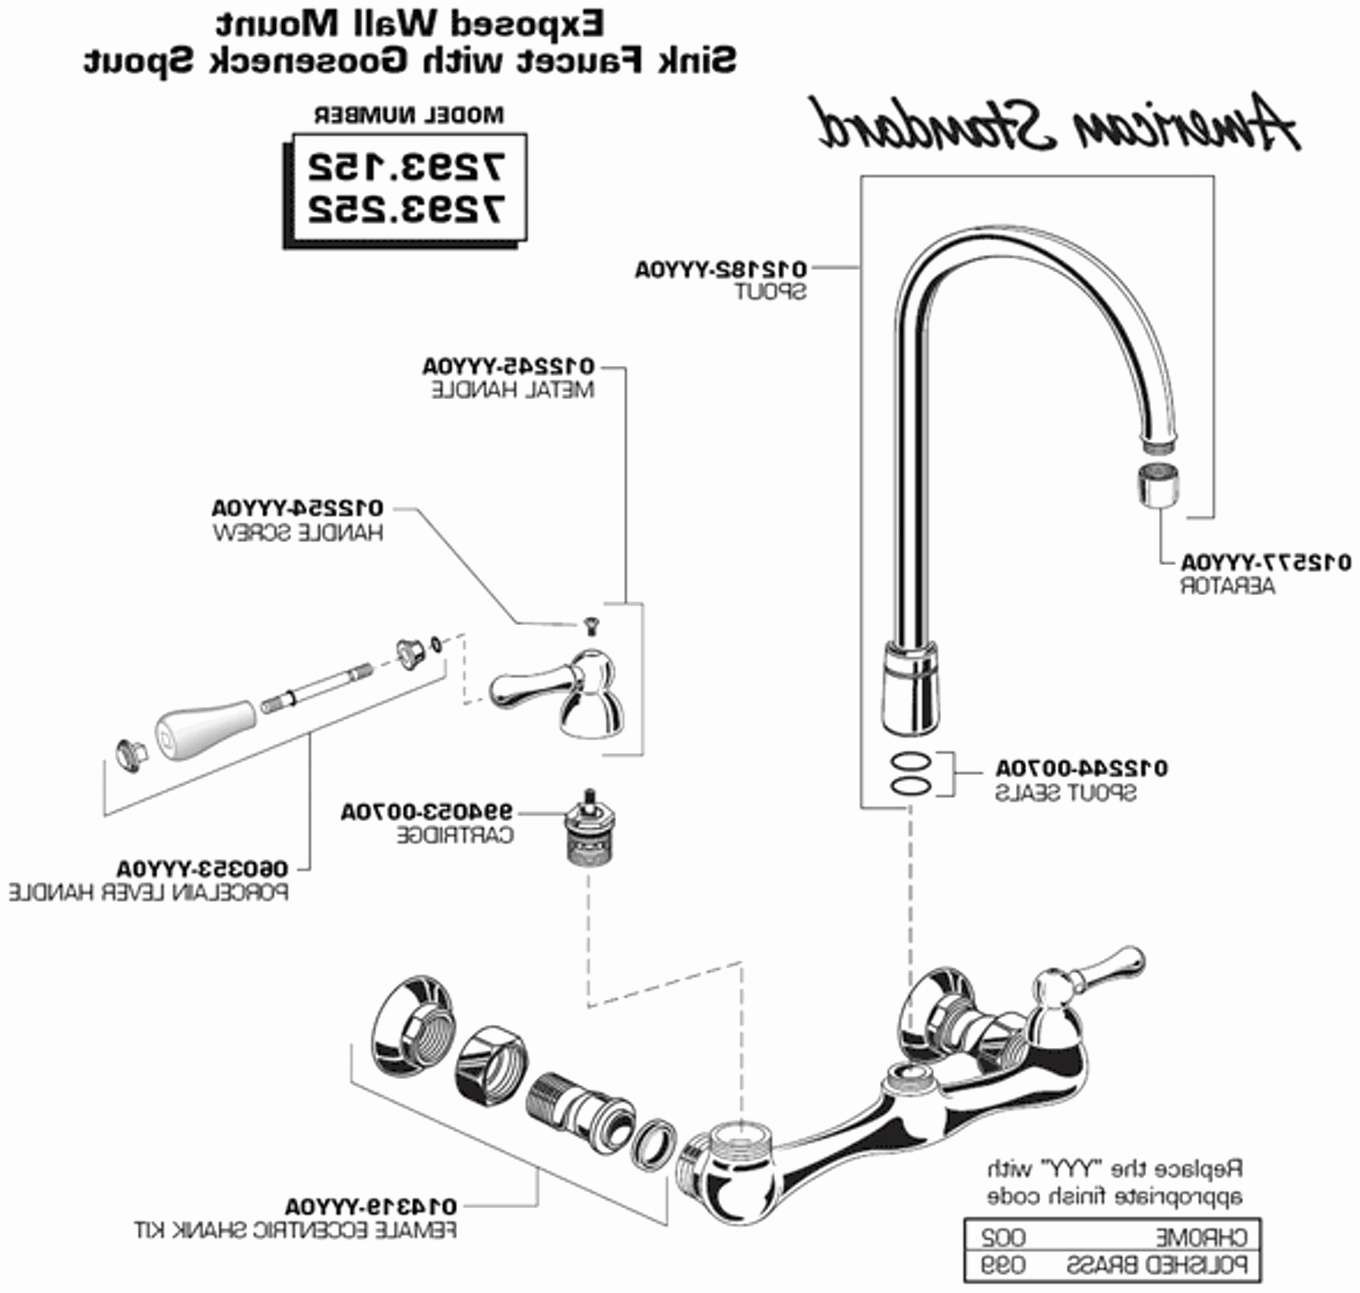 Shower Faucet Diagram Parts Of A Shower Faucet Diagram Moen Single Handle Shower Faucet